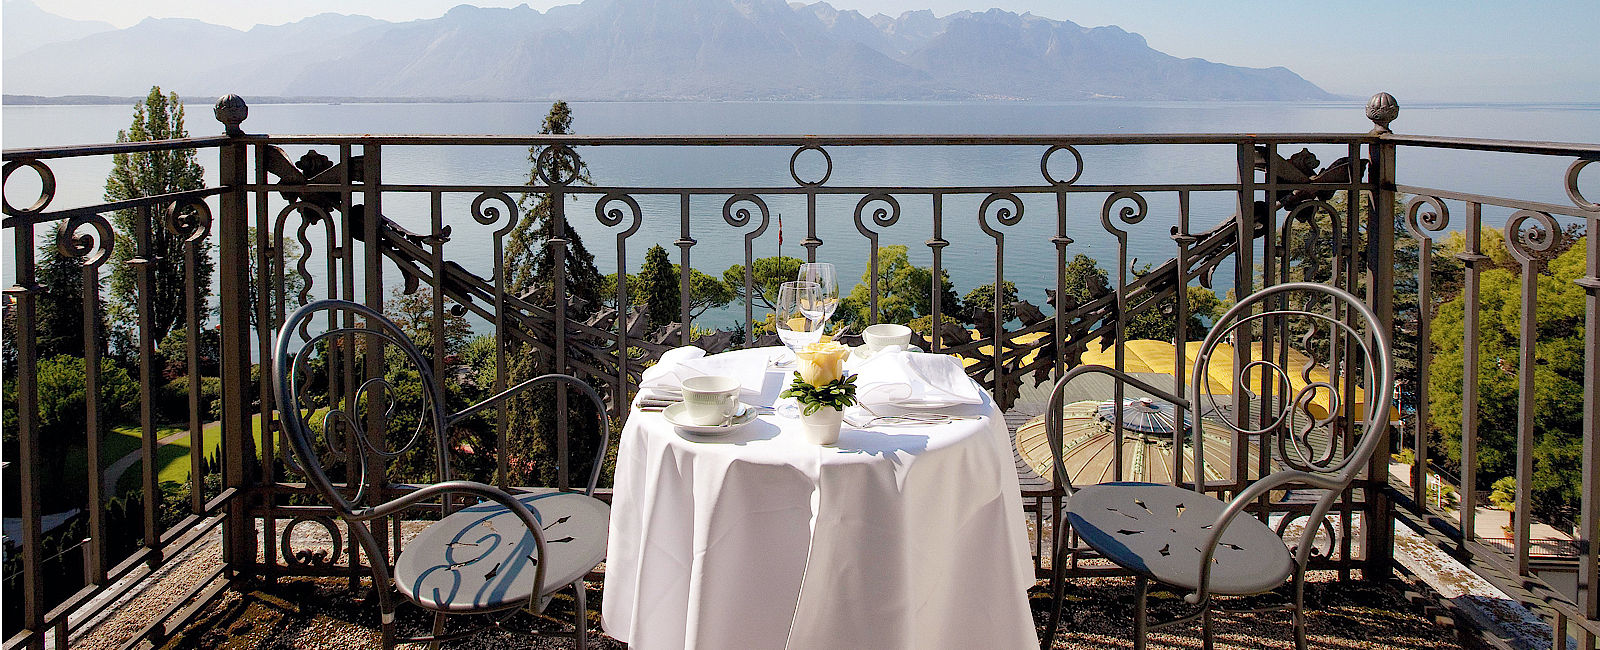 HOTELTEST
 Fairmont Le Montreux Palace 
 Grandhotel mit Festival- Flair 